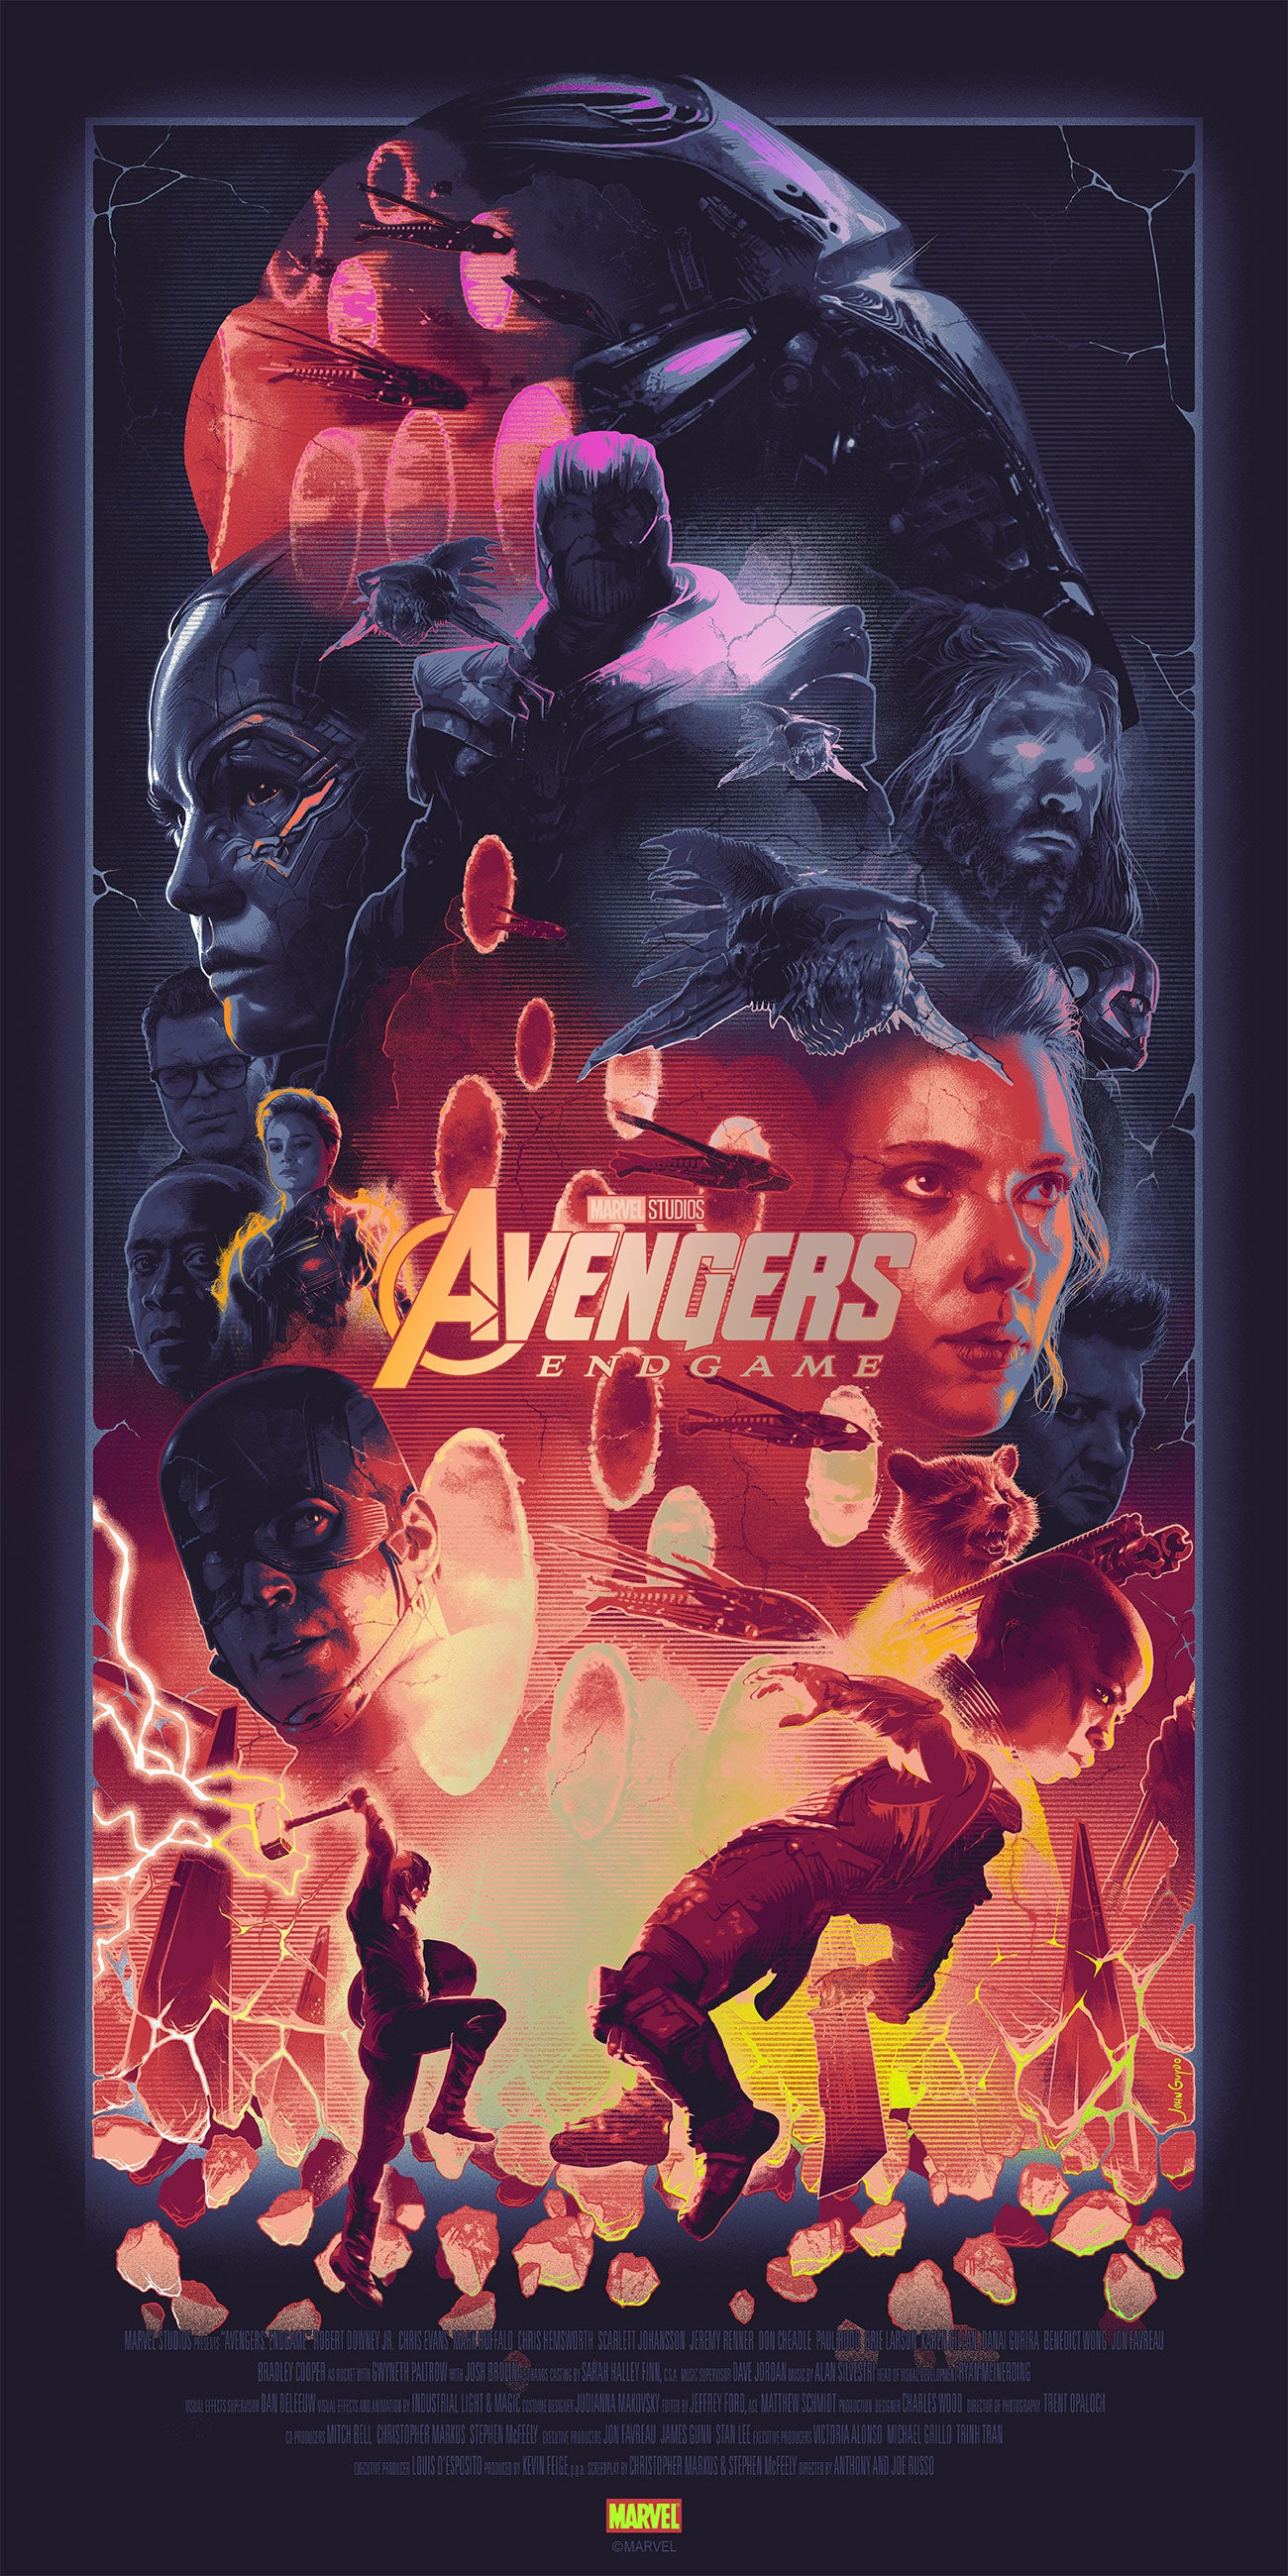 John Guydo "Avengers: Endgame" Foil Variant